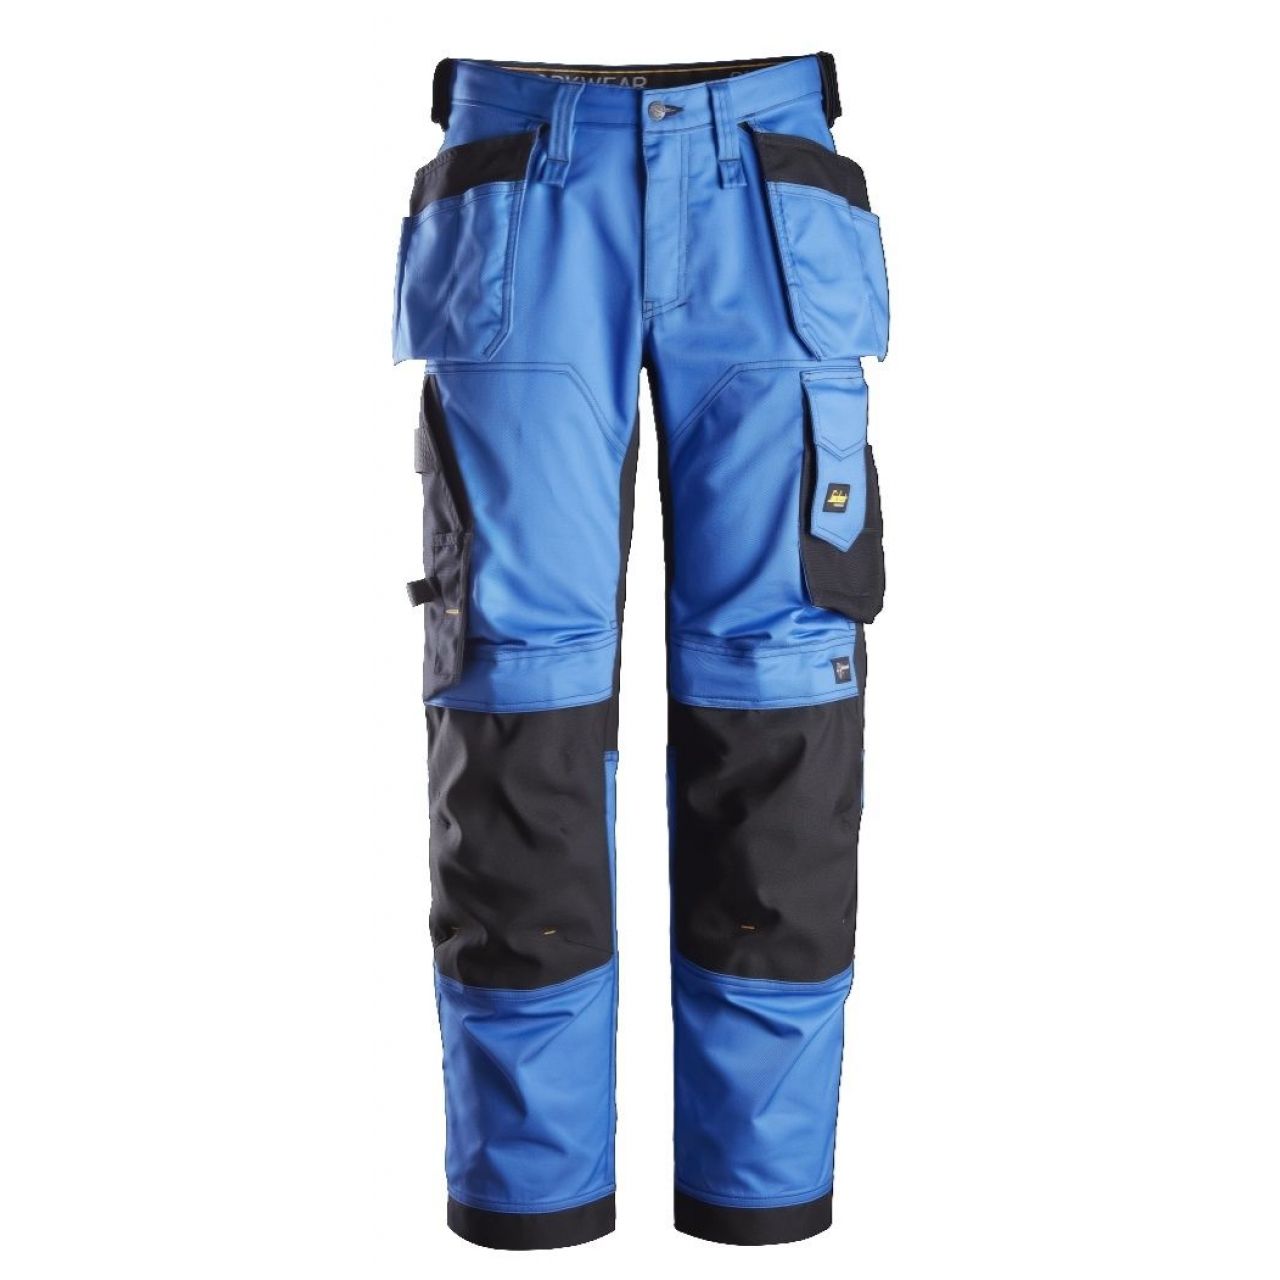 Pantalon elastico ajuste holgado AllroundWork bolsillos flotantes azul-negro talla 104